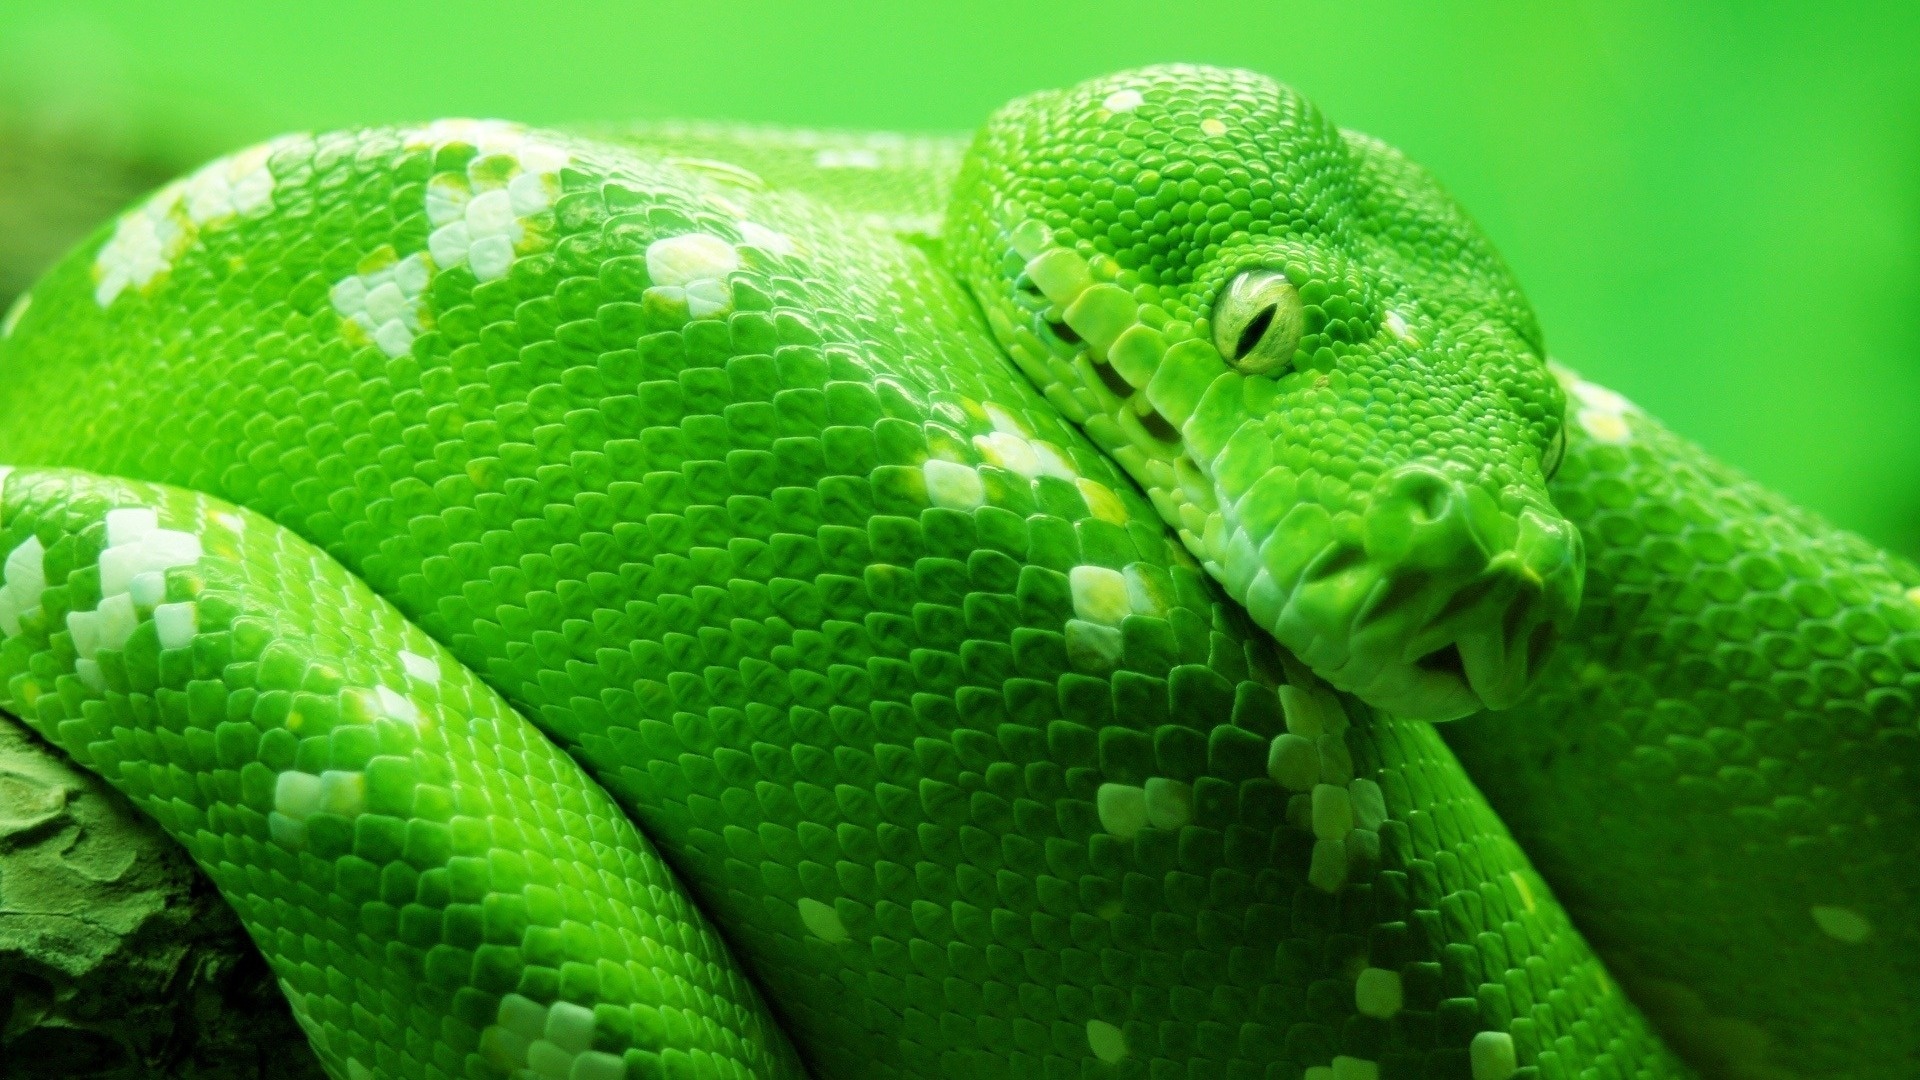 Cool HD Green Snake Wallpaper